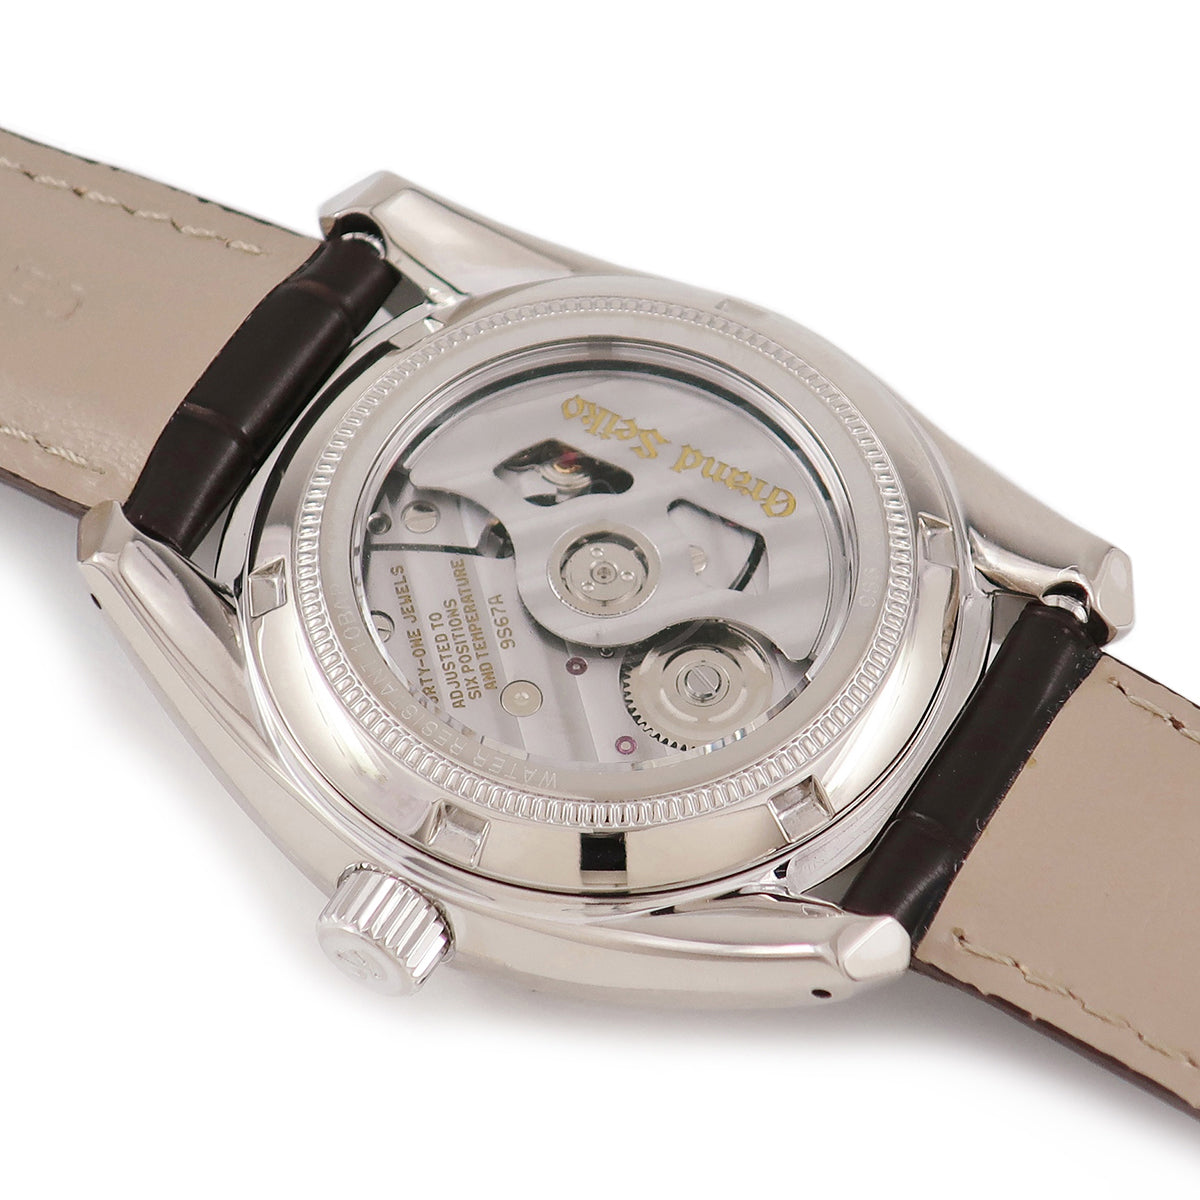 グランドセイコー GRAND SEIKO メカニカル 3デイズ SBGL001 メンズ 腕時計 9S67 00A0 パワーリザーブ 自動巻き Mechanical VLP 90194666